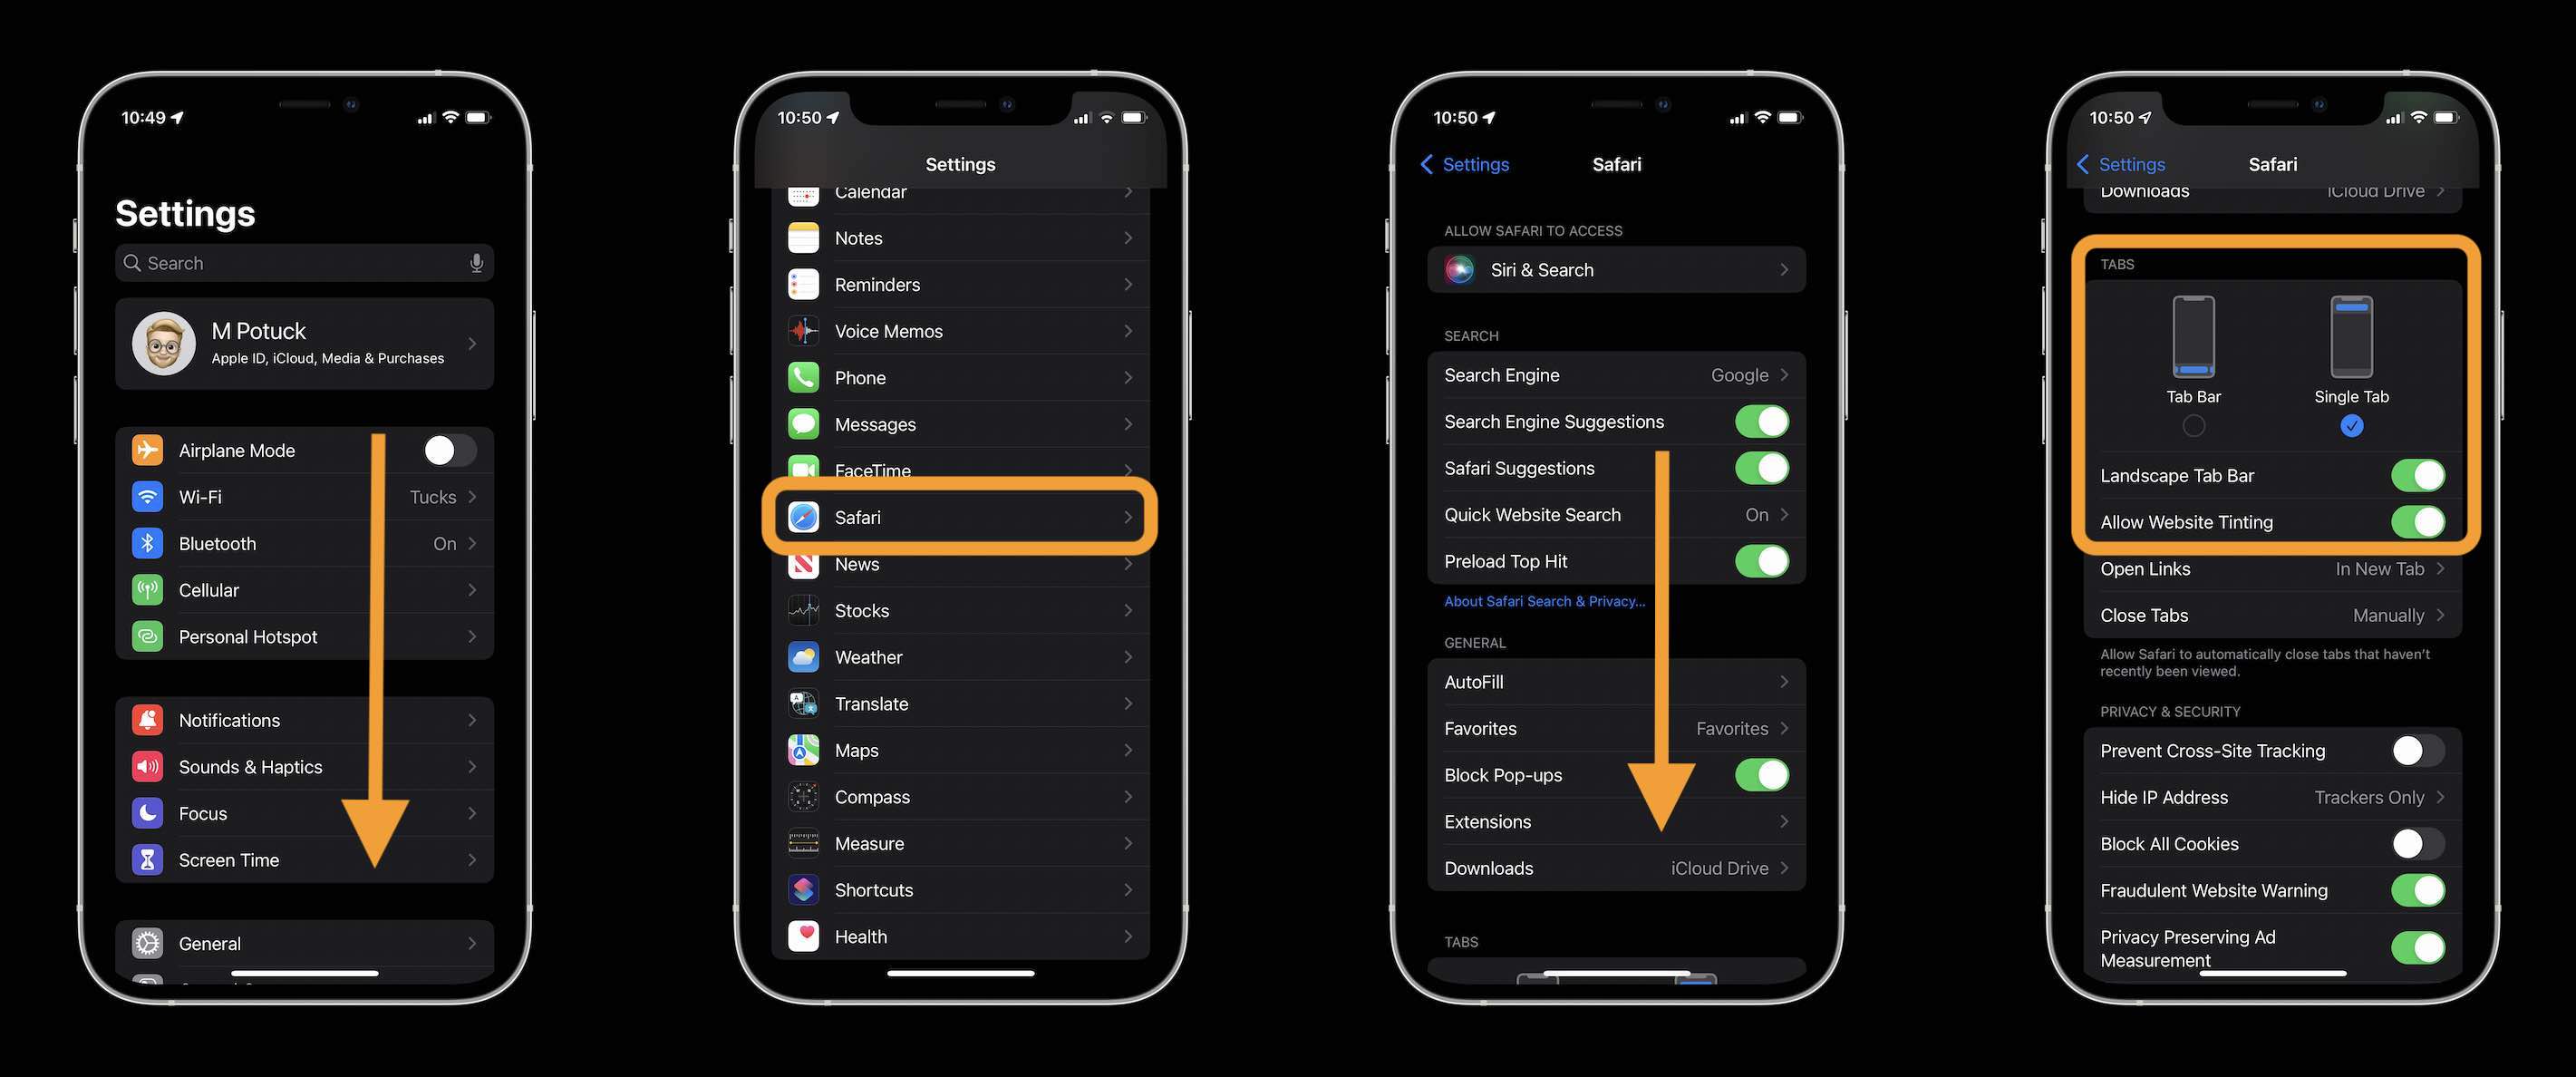 How to change iOS 15 Safari address/search bar on iPhone walkthrough 3 - open the Settings app, swipe down and tap Safari, swipe down and choose "Single Tab" 